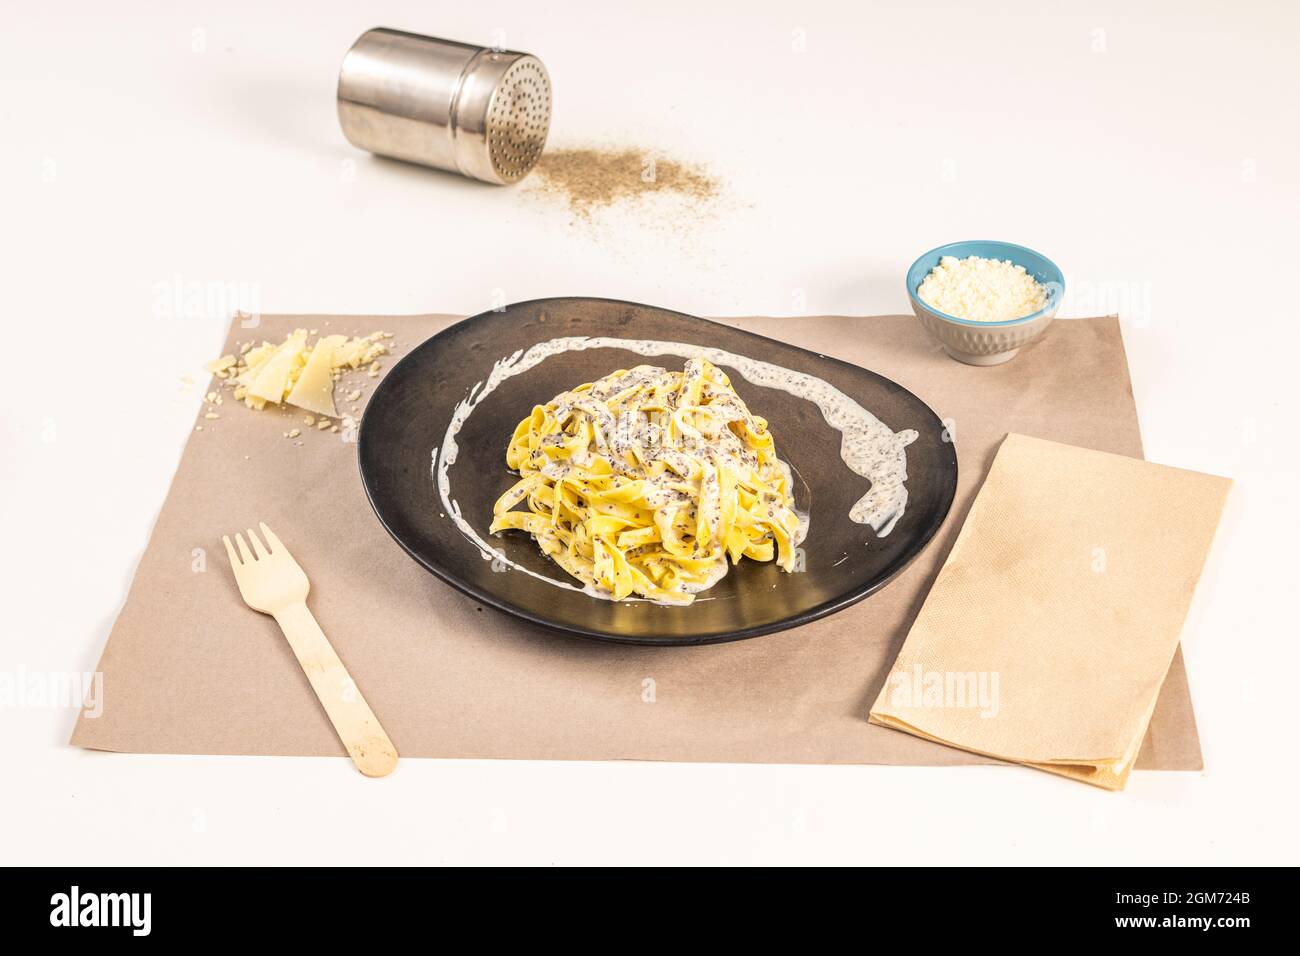 Schönes Nudelgericht mit köstlichem Tagliatelle tartufata Rezept mit geriebenem Käse und Parmesan-Flocken auf einem weißen Tisch. Stockfoto